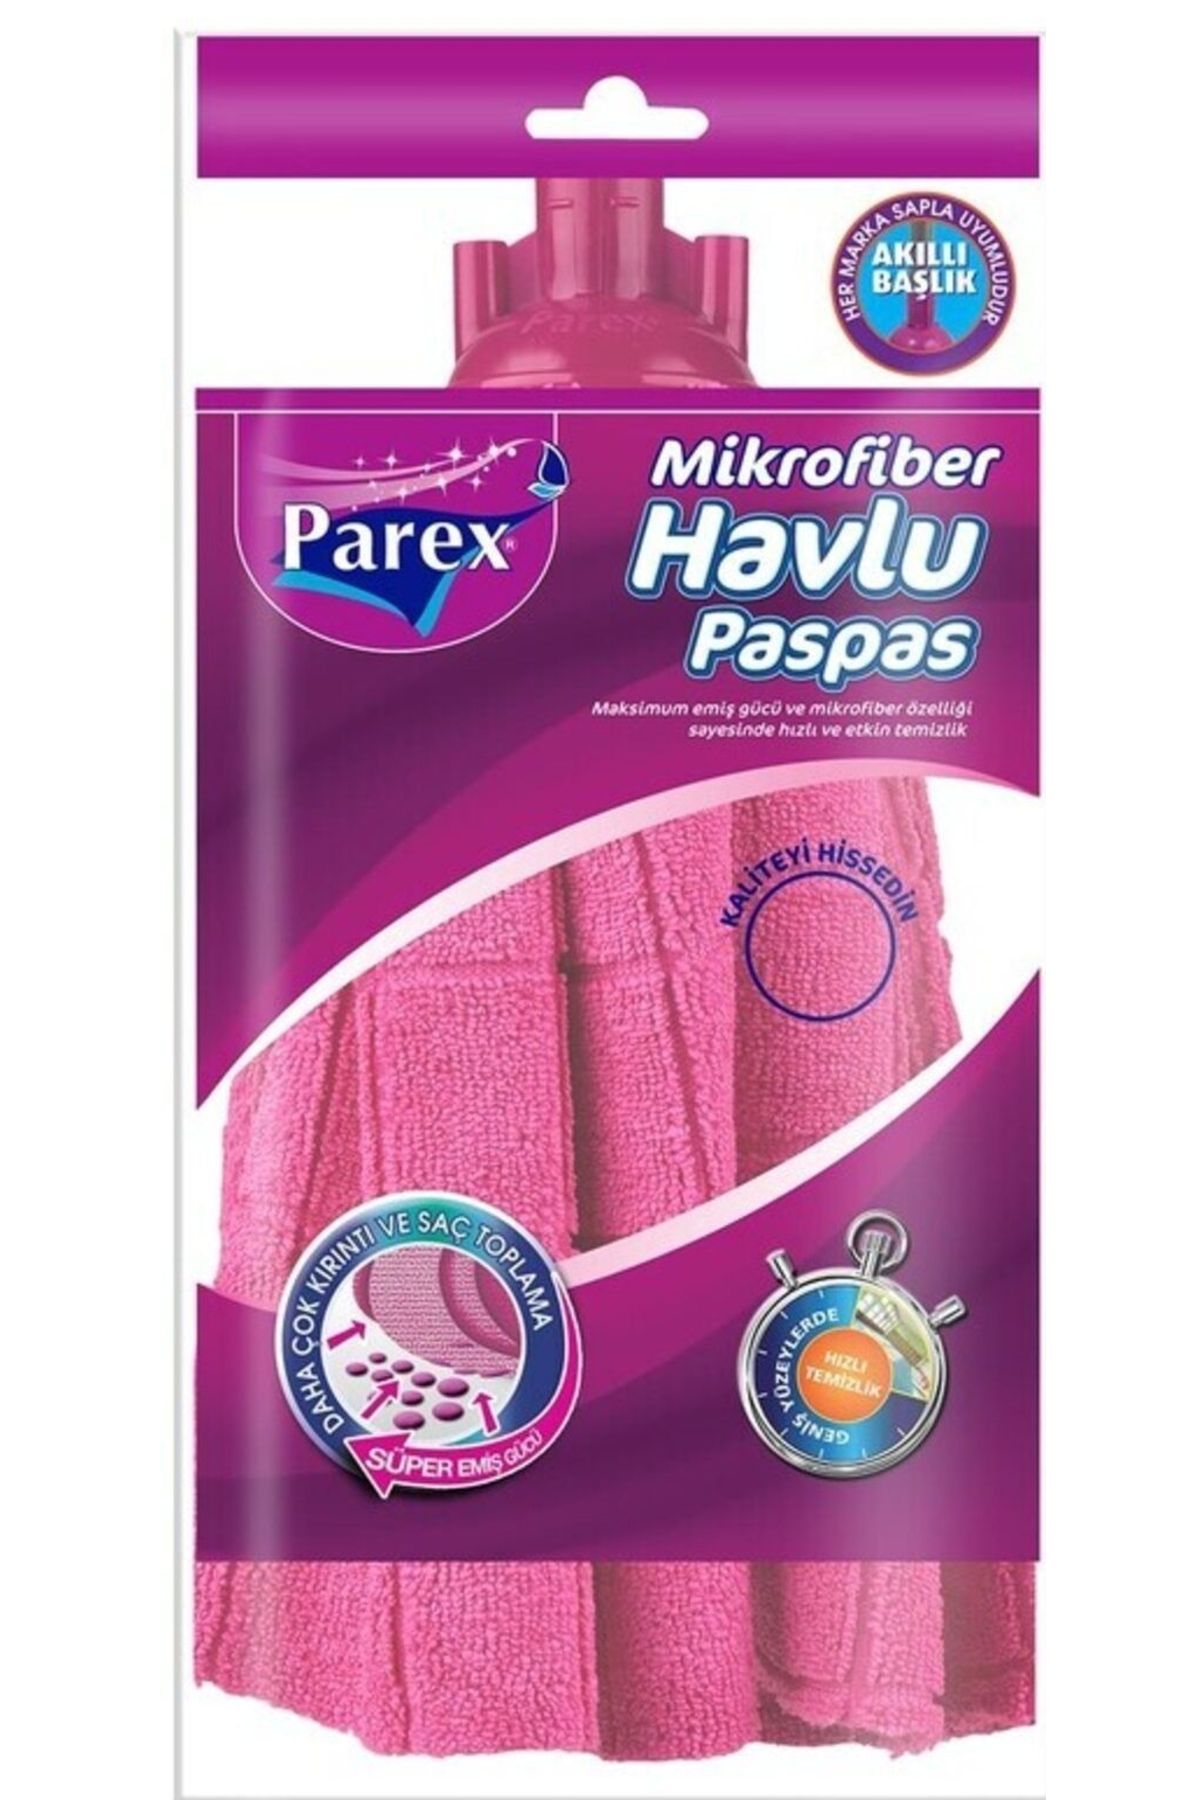 Parex Mikrofiber Havlu Paspas